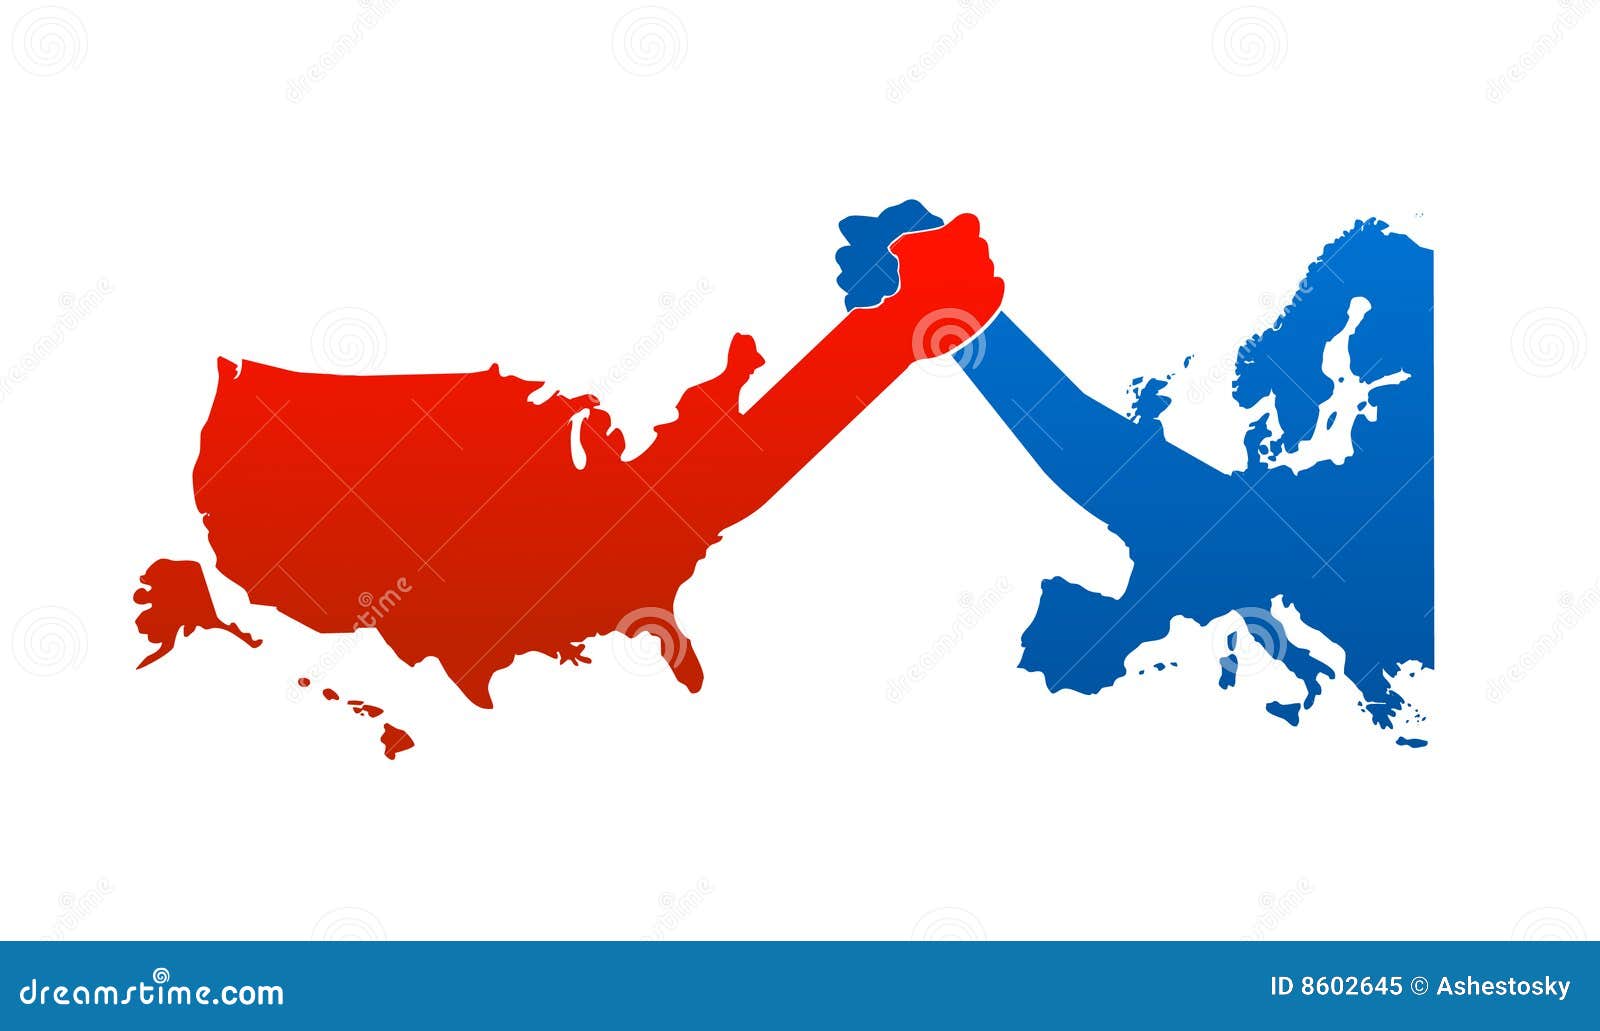 united states versus europe